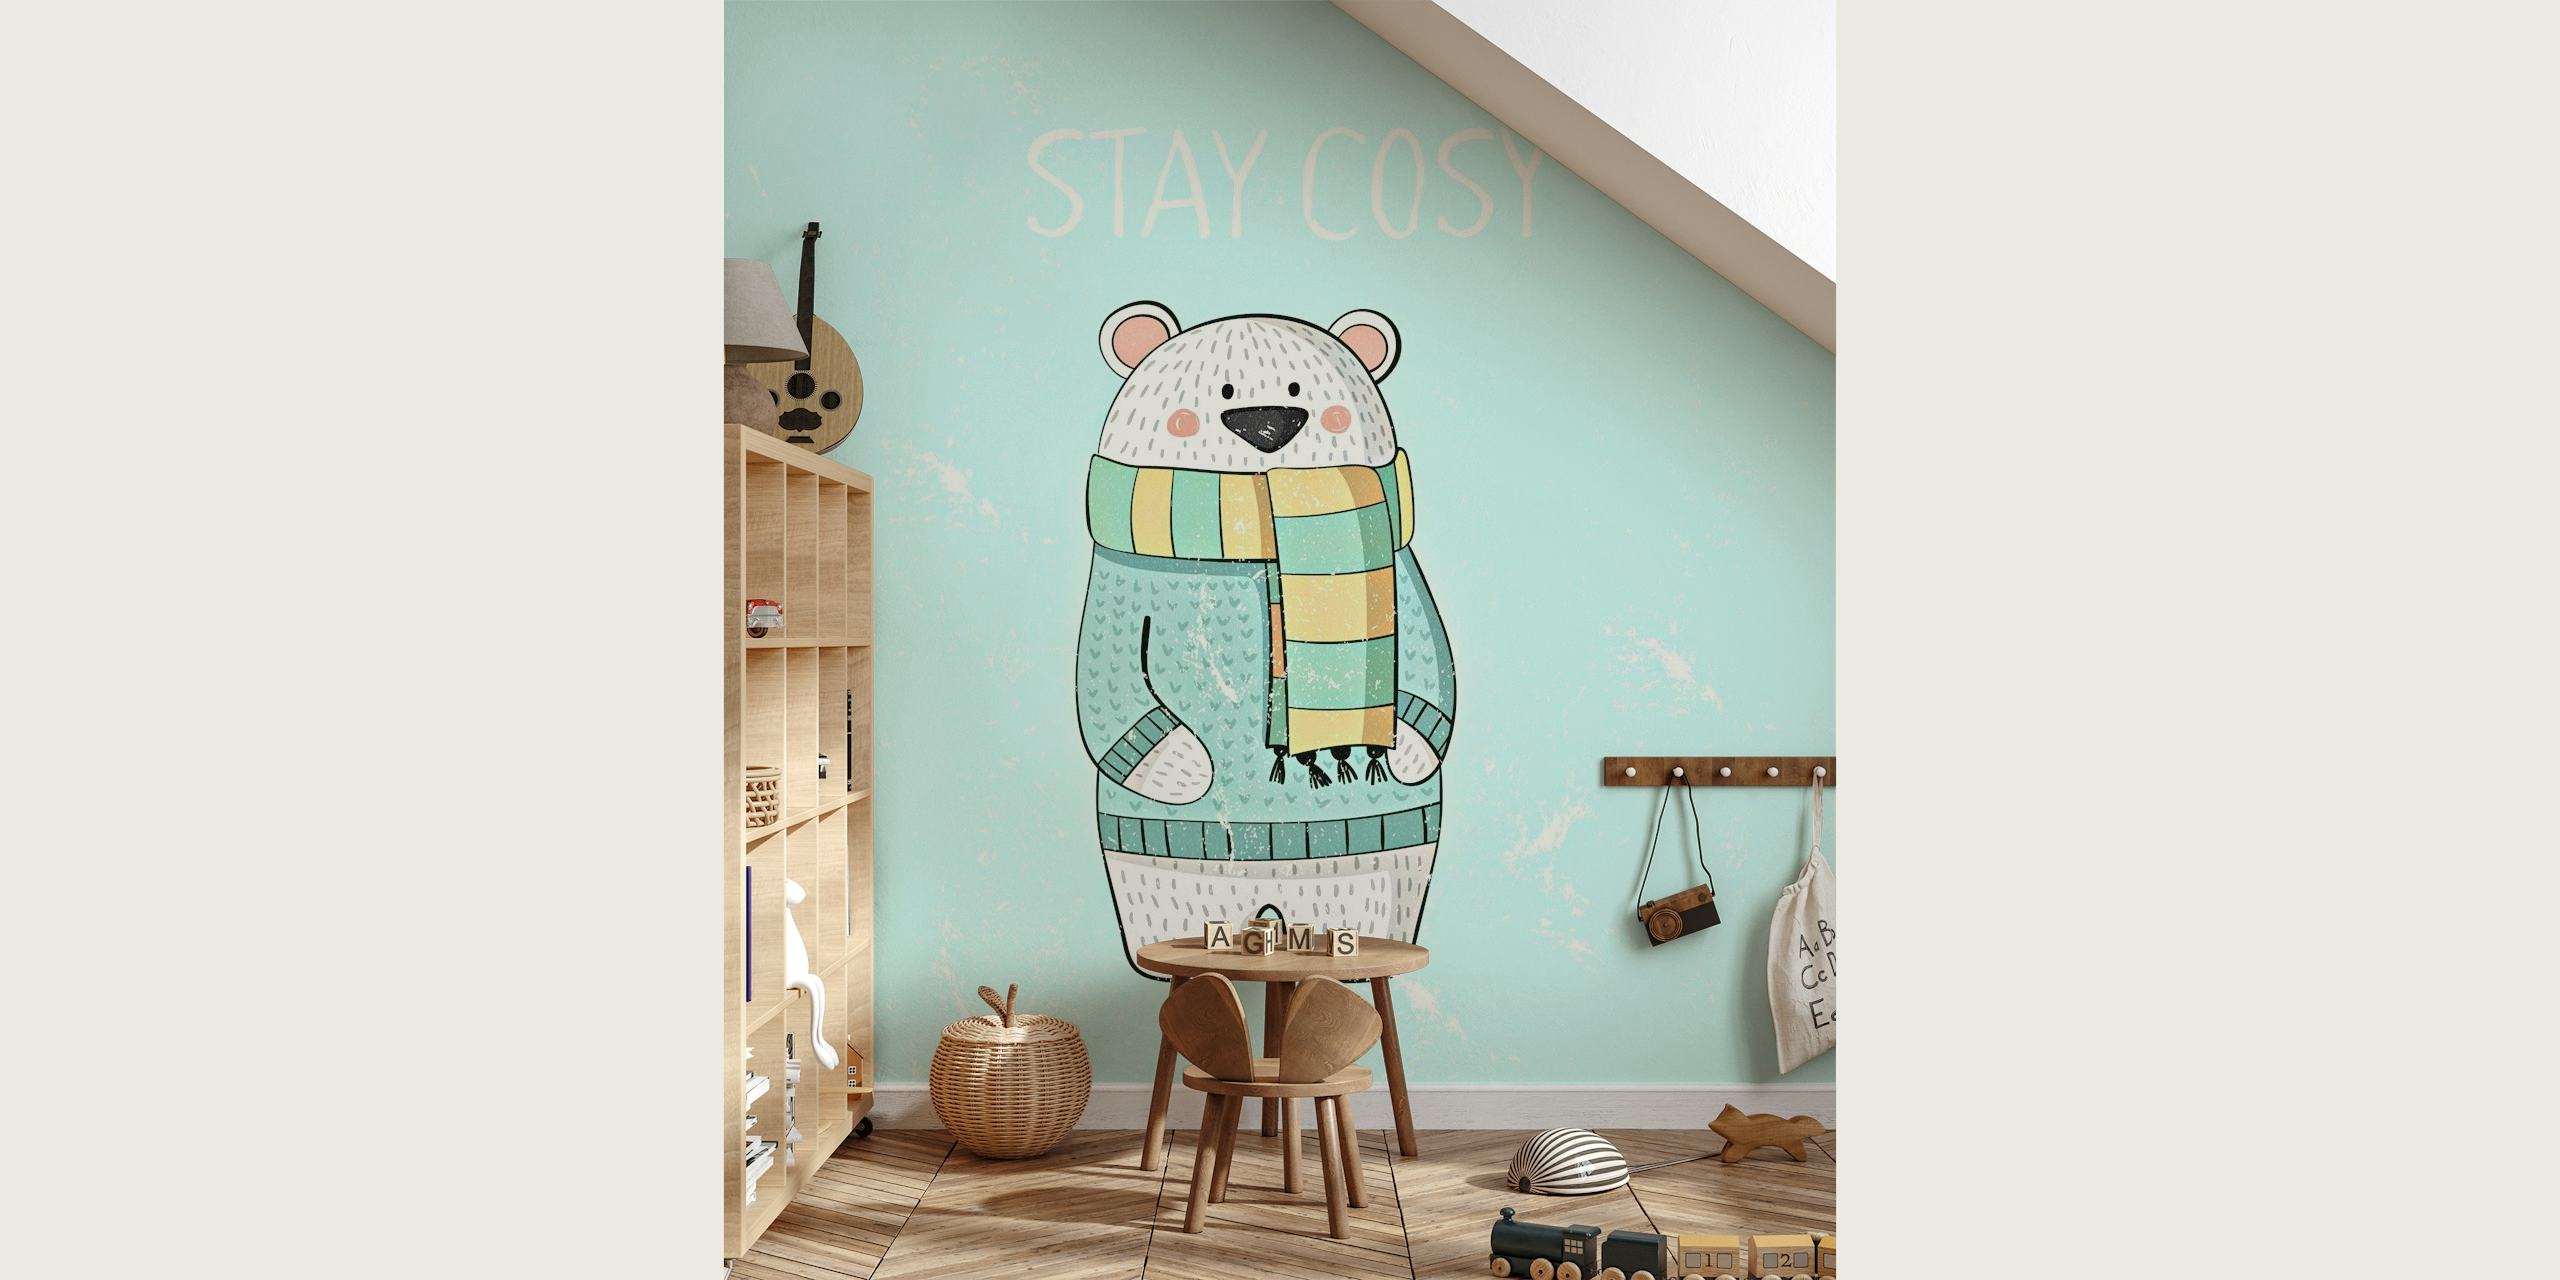 Polar Bear Stay Cozy vægmaleri med en sød bjørn i et tørklæde